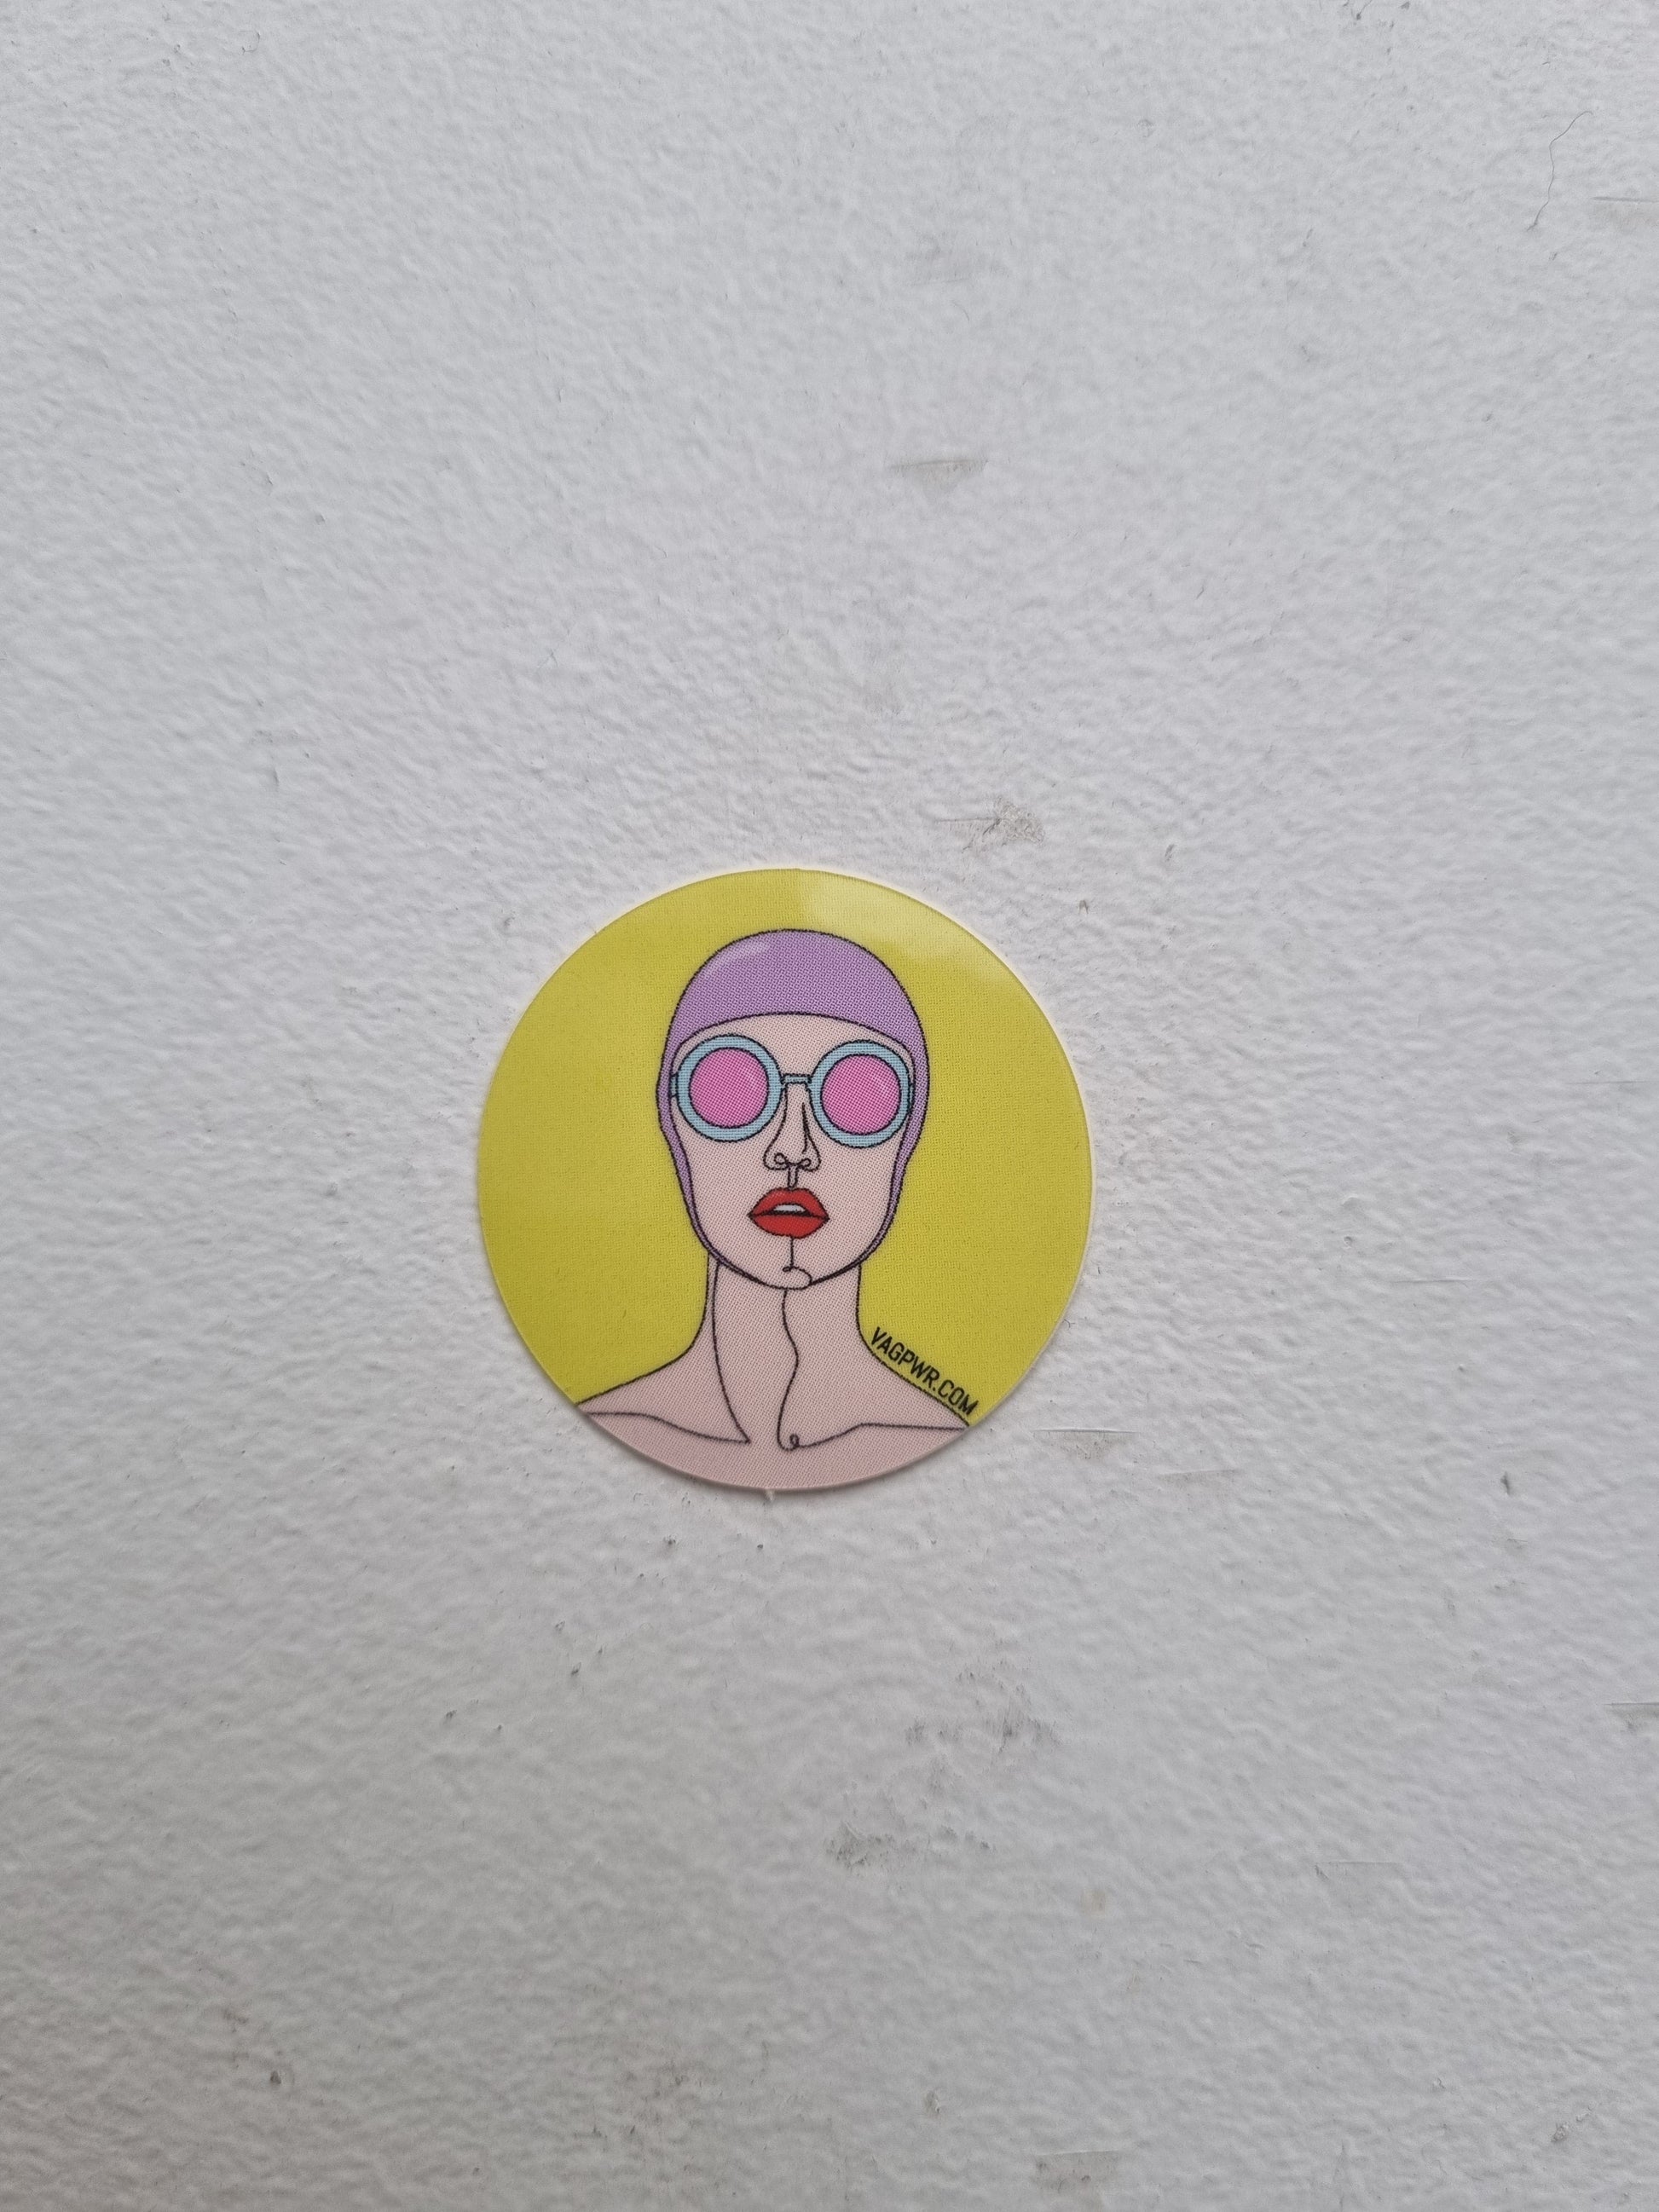 VAGPWR Stickers Sticker - Swim lady